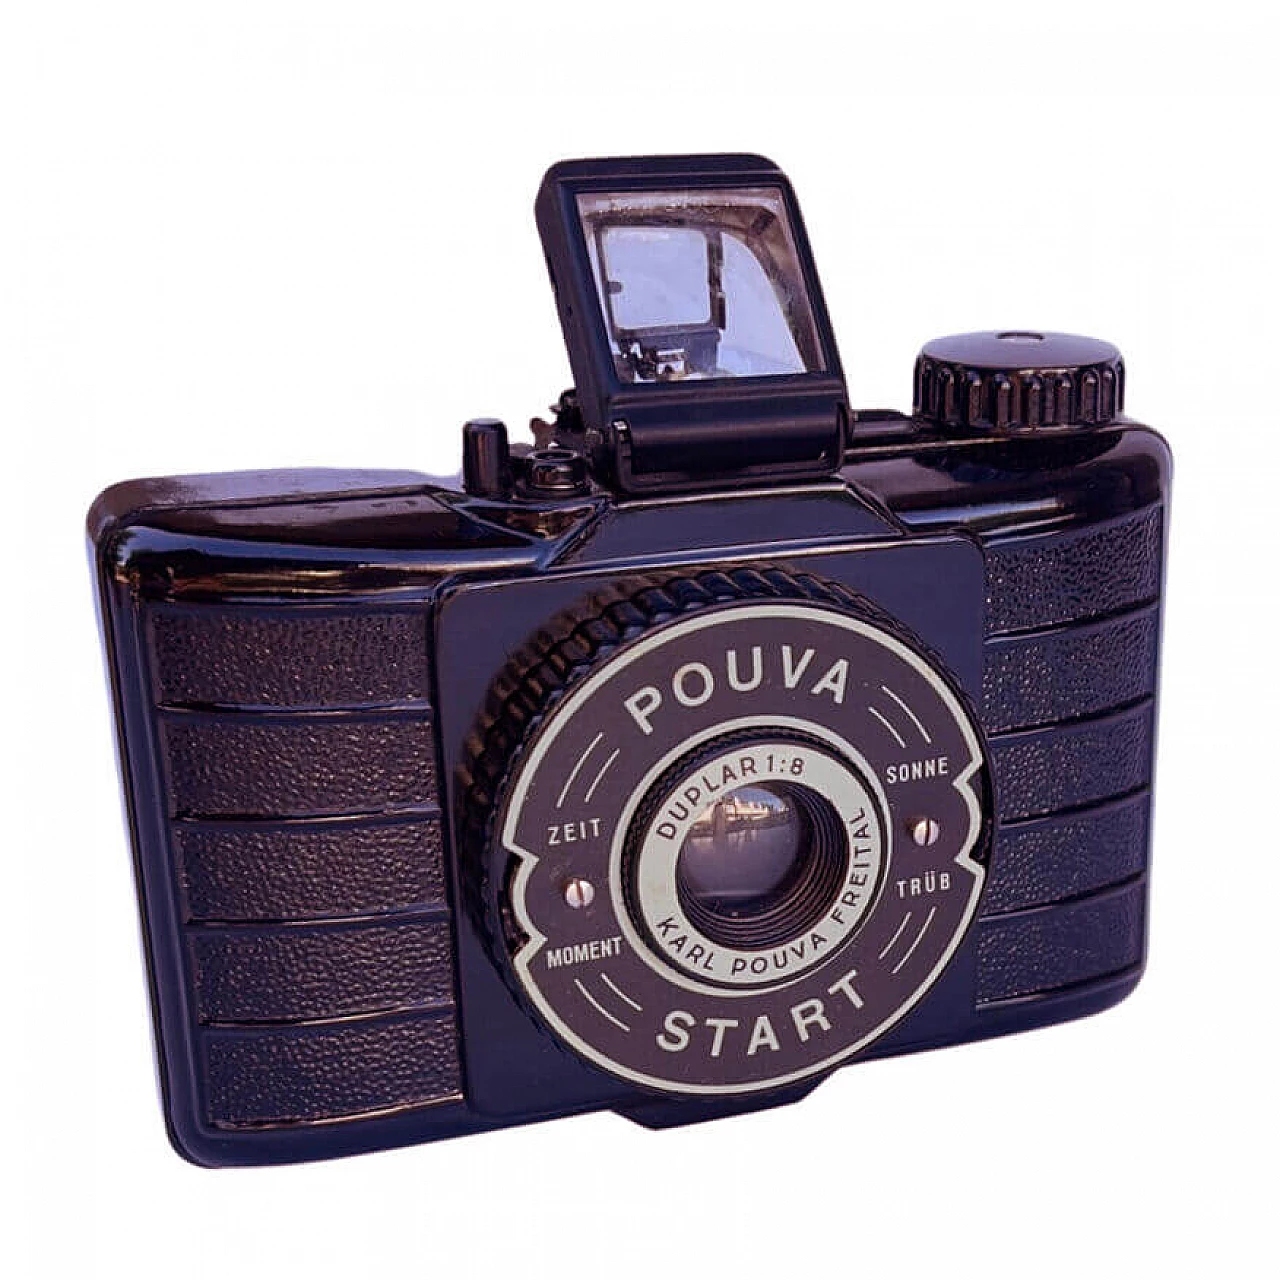 Pouva Start camera by Karl Pouva, 1950s 9